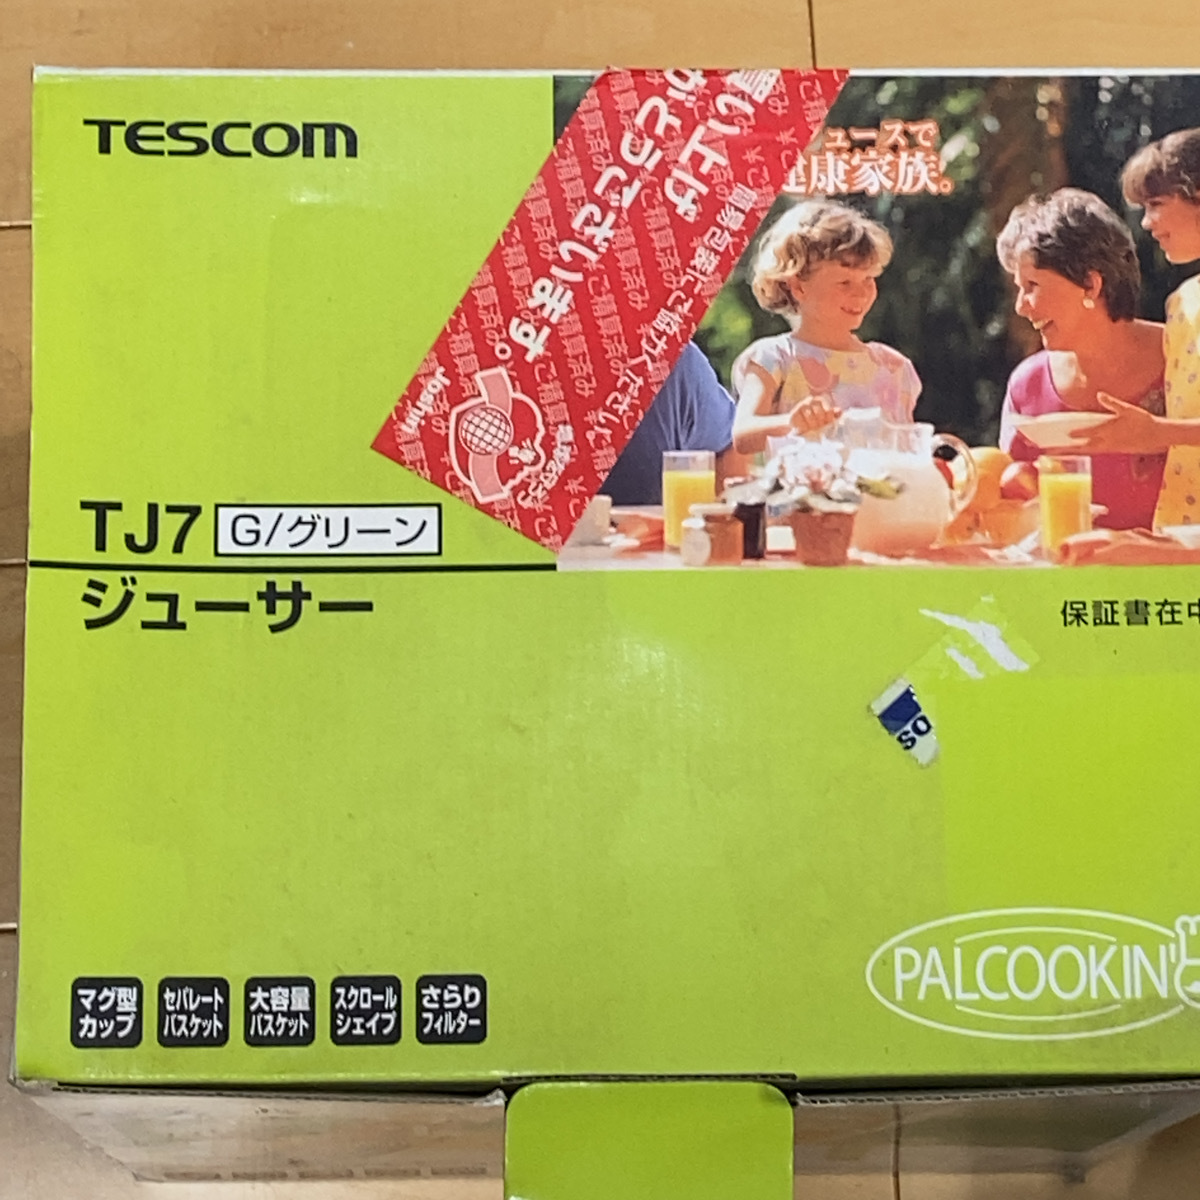 【送料無料】TESCOM PALCOOKIN TJ7 テスコム ジューサー 箱あり キッチン用品 0530